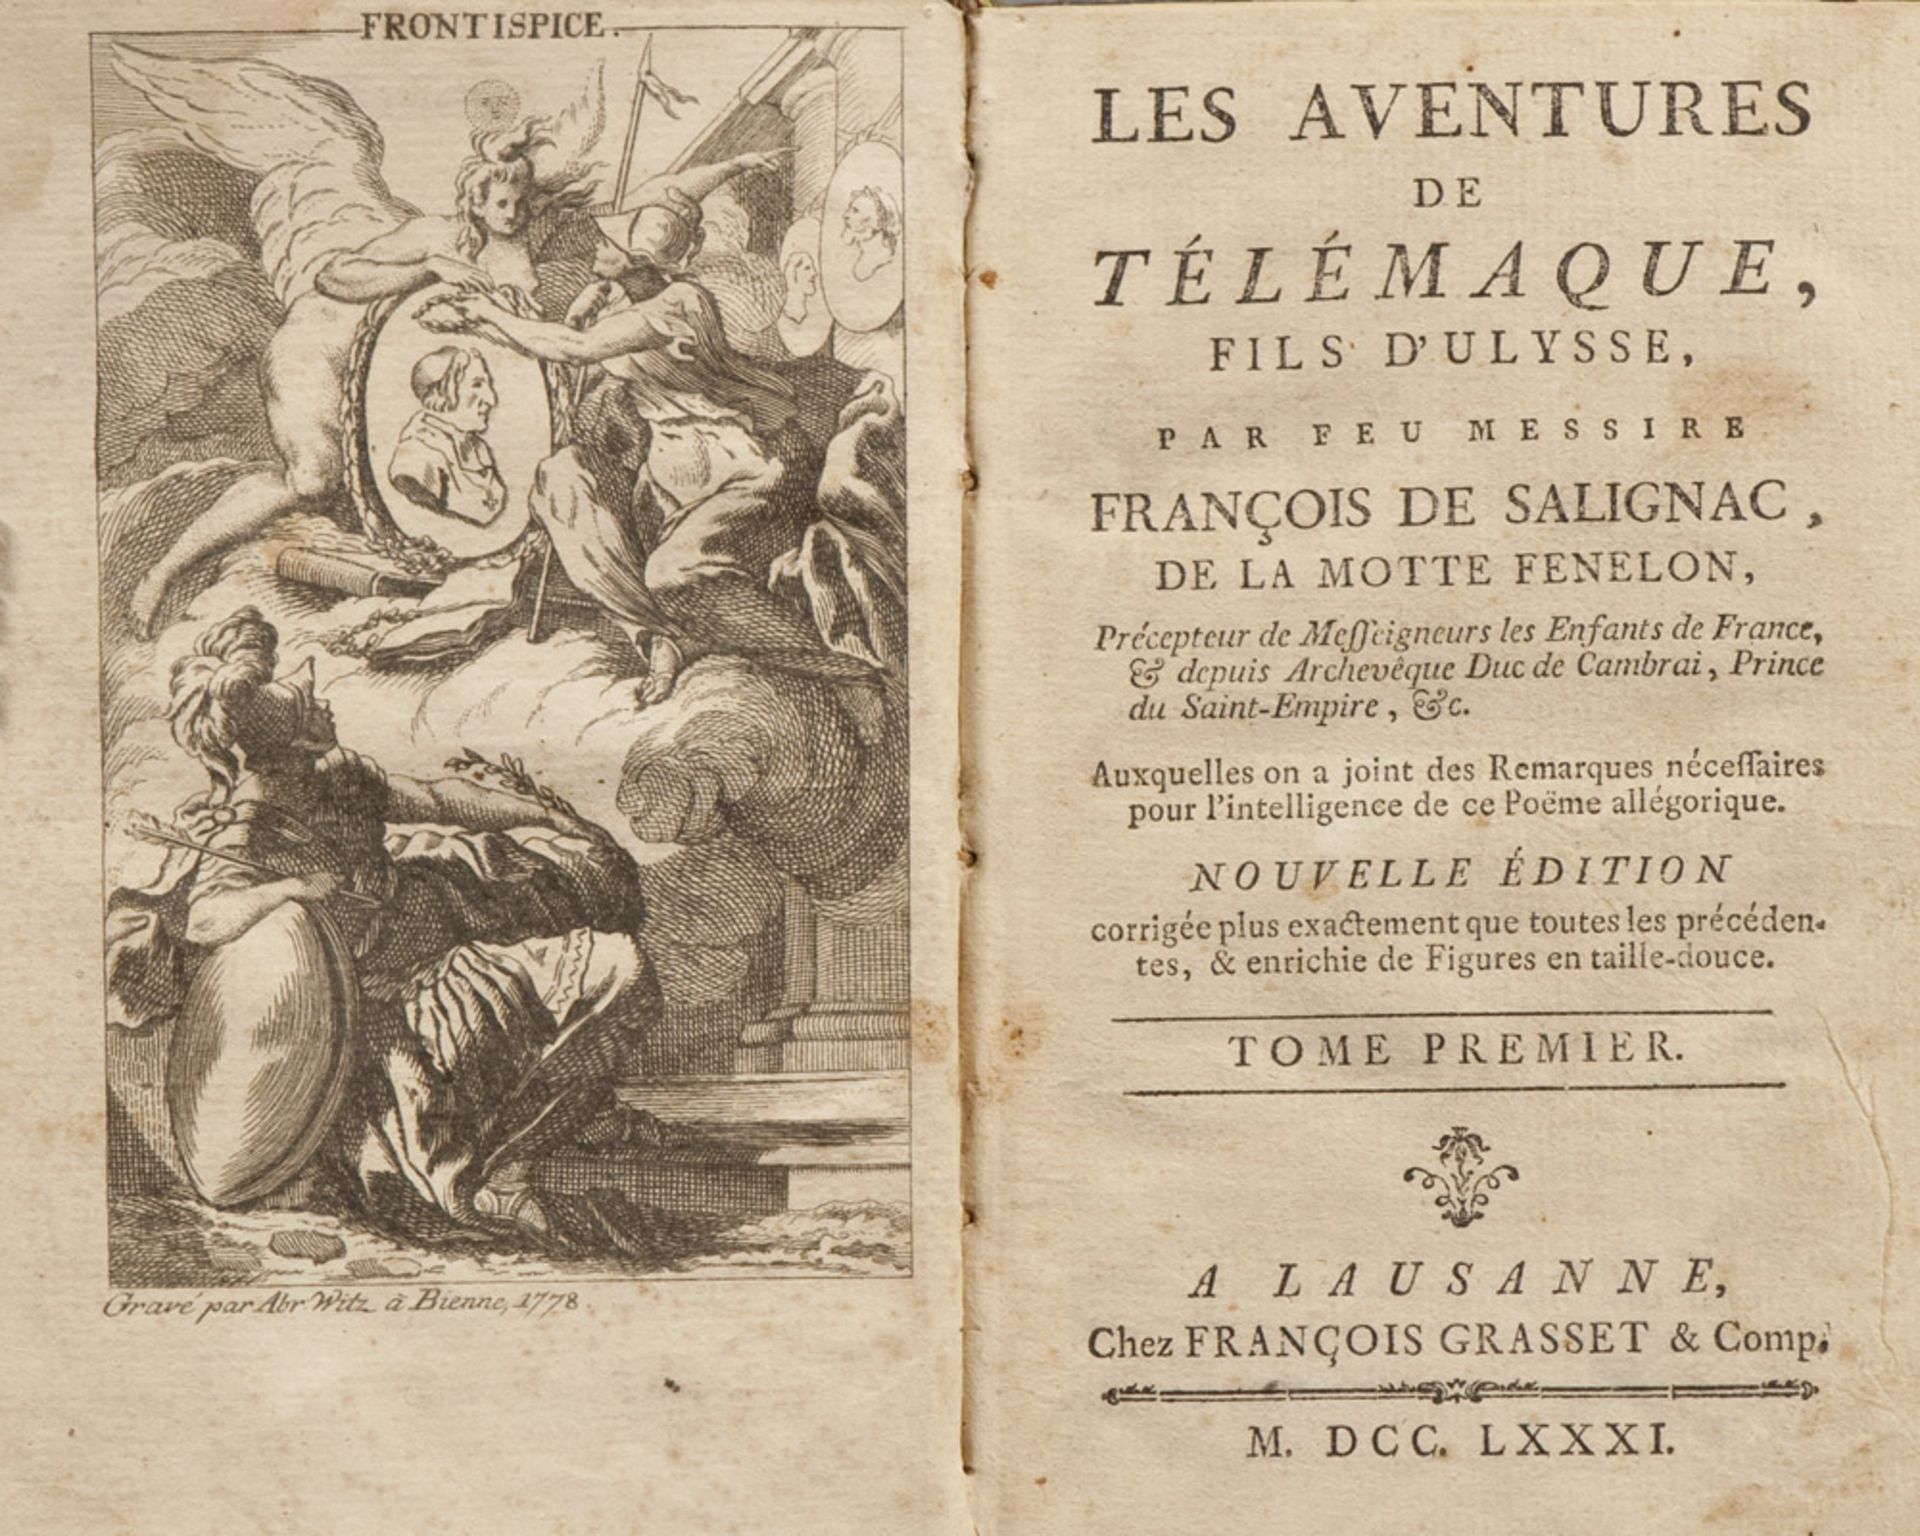 CLASSICAL François de Salignac, Les Aventures de Télemaque. A volume with engravings and engraving